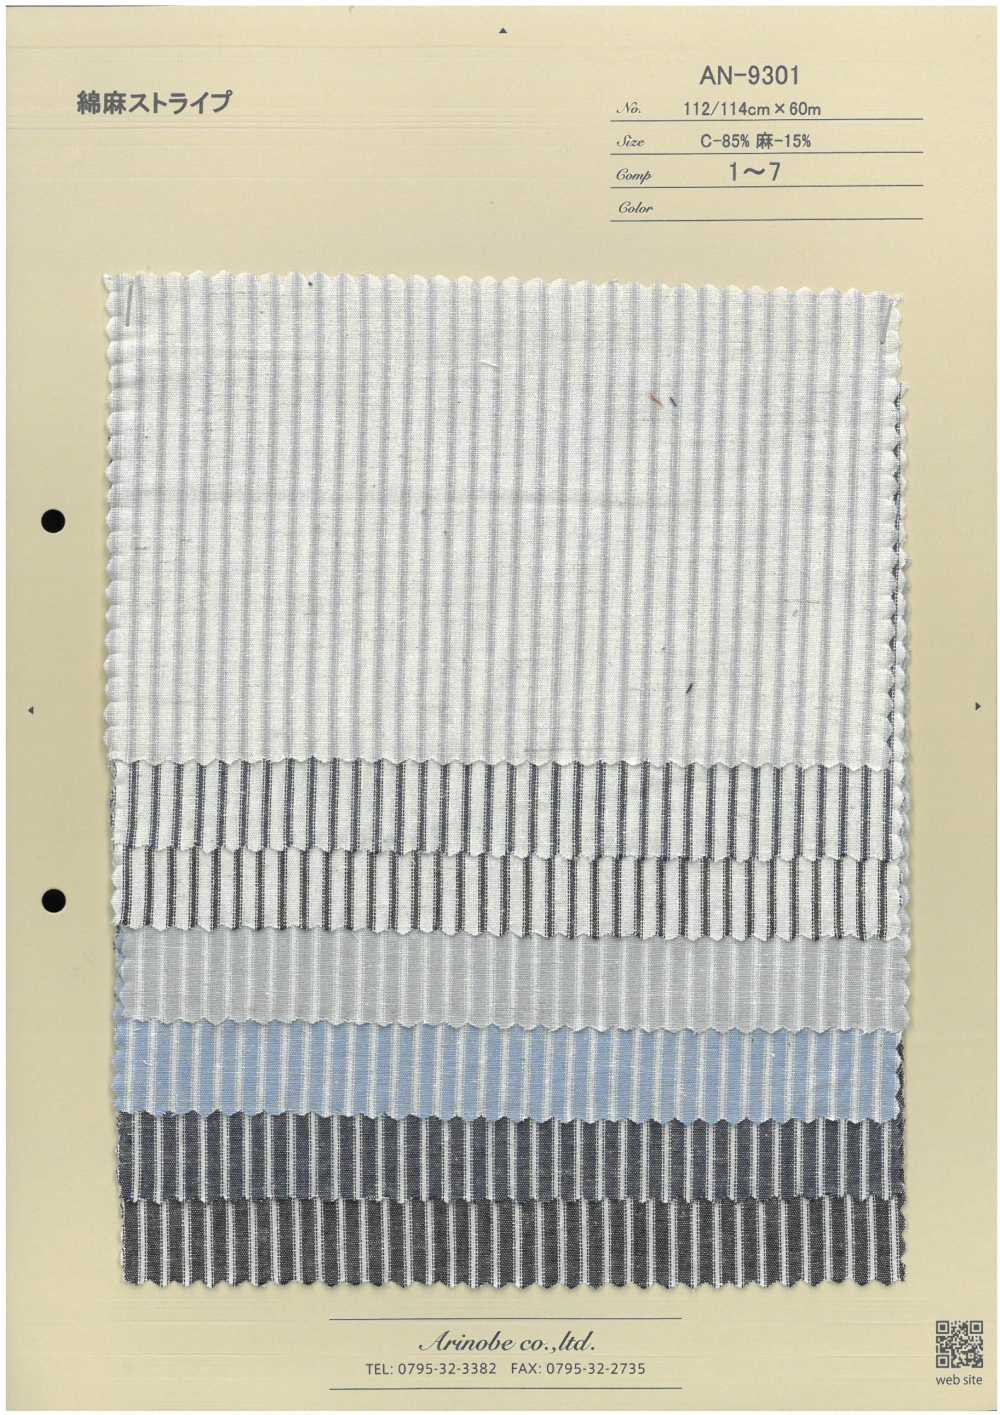 AN-9301 Leinenstreifen[Textilgewebe] ARINOBE CO., LTD.